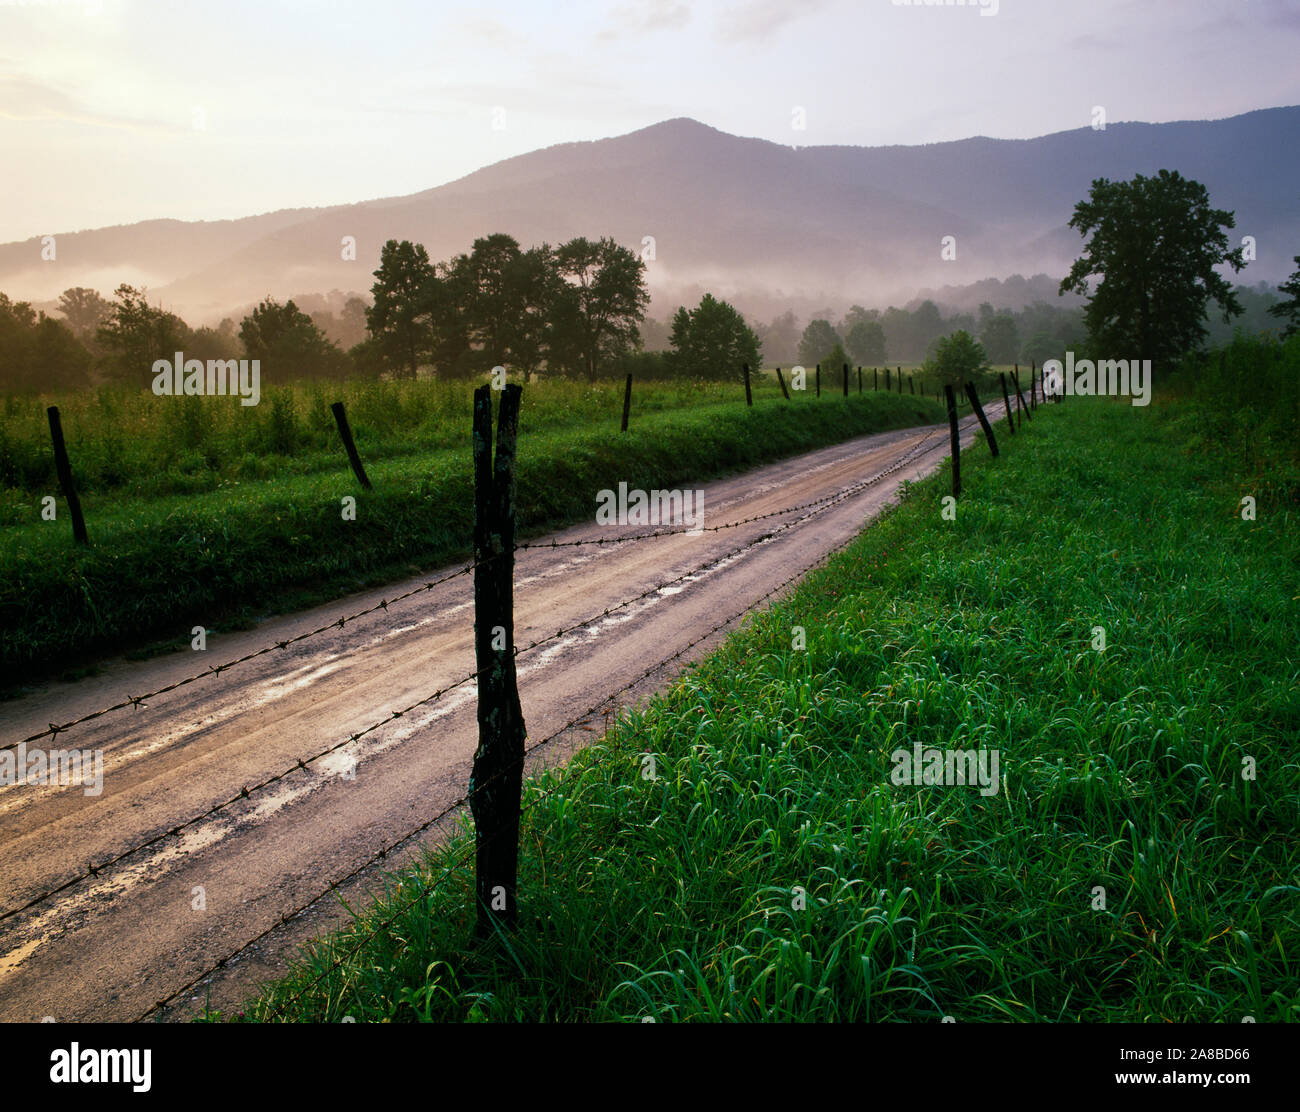 Road y cerca de alambre de púas en el paisaje con montañas en segundo plano. Foto de stock